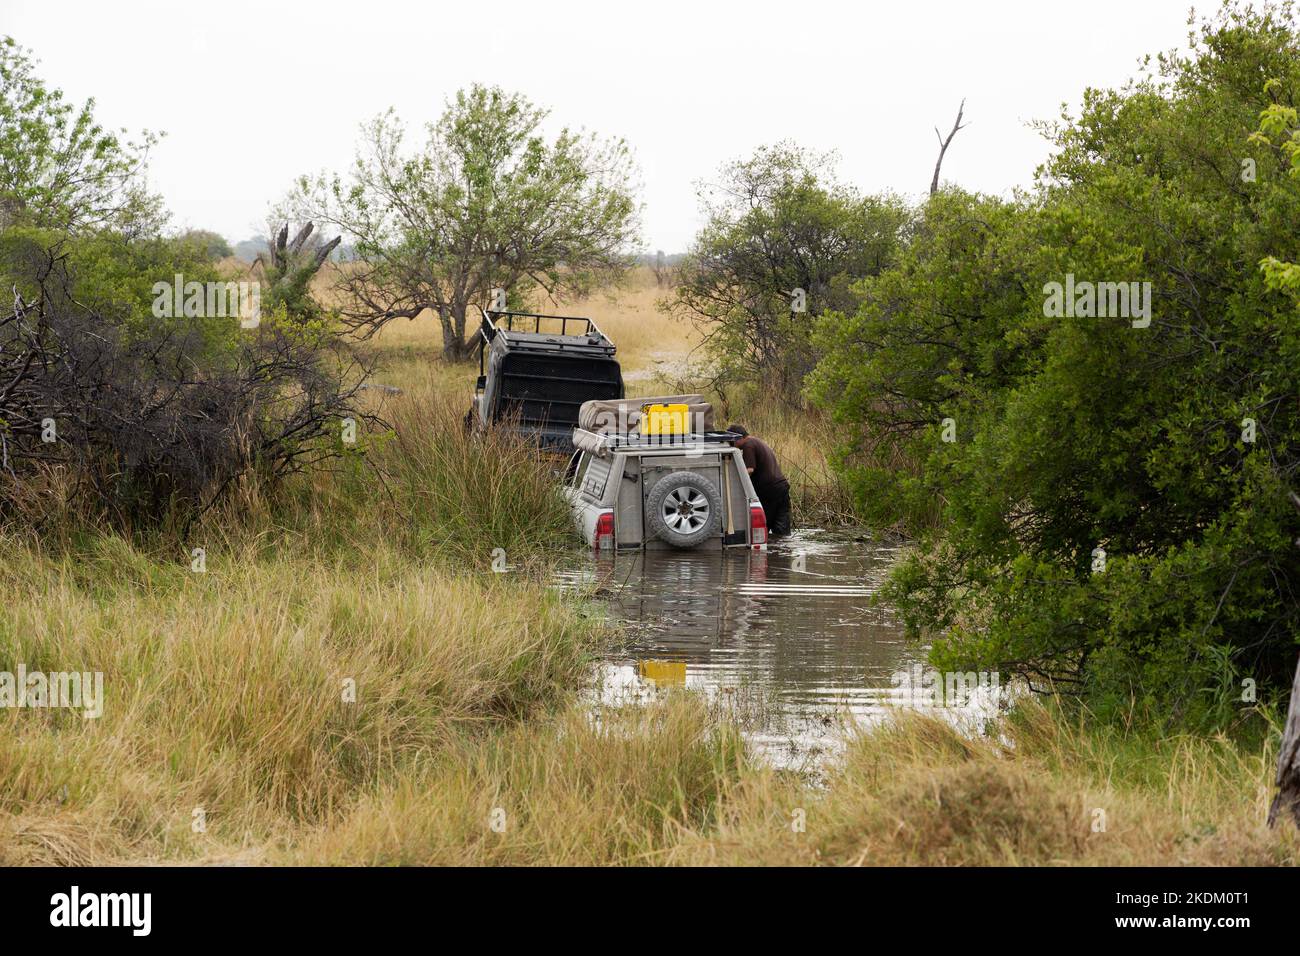 Jeep safari dangers; Une jeep touristique étant tirée d'une rivière avec un problème s'étant coincé; Moremi Game Reserve, Okavango Delta Botswana Afrique. Banque D'Images